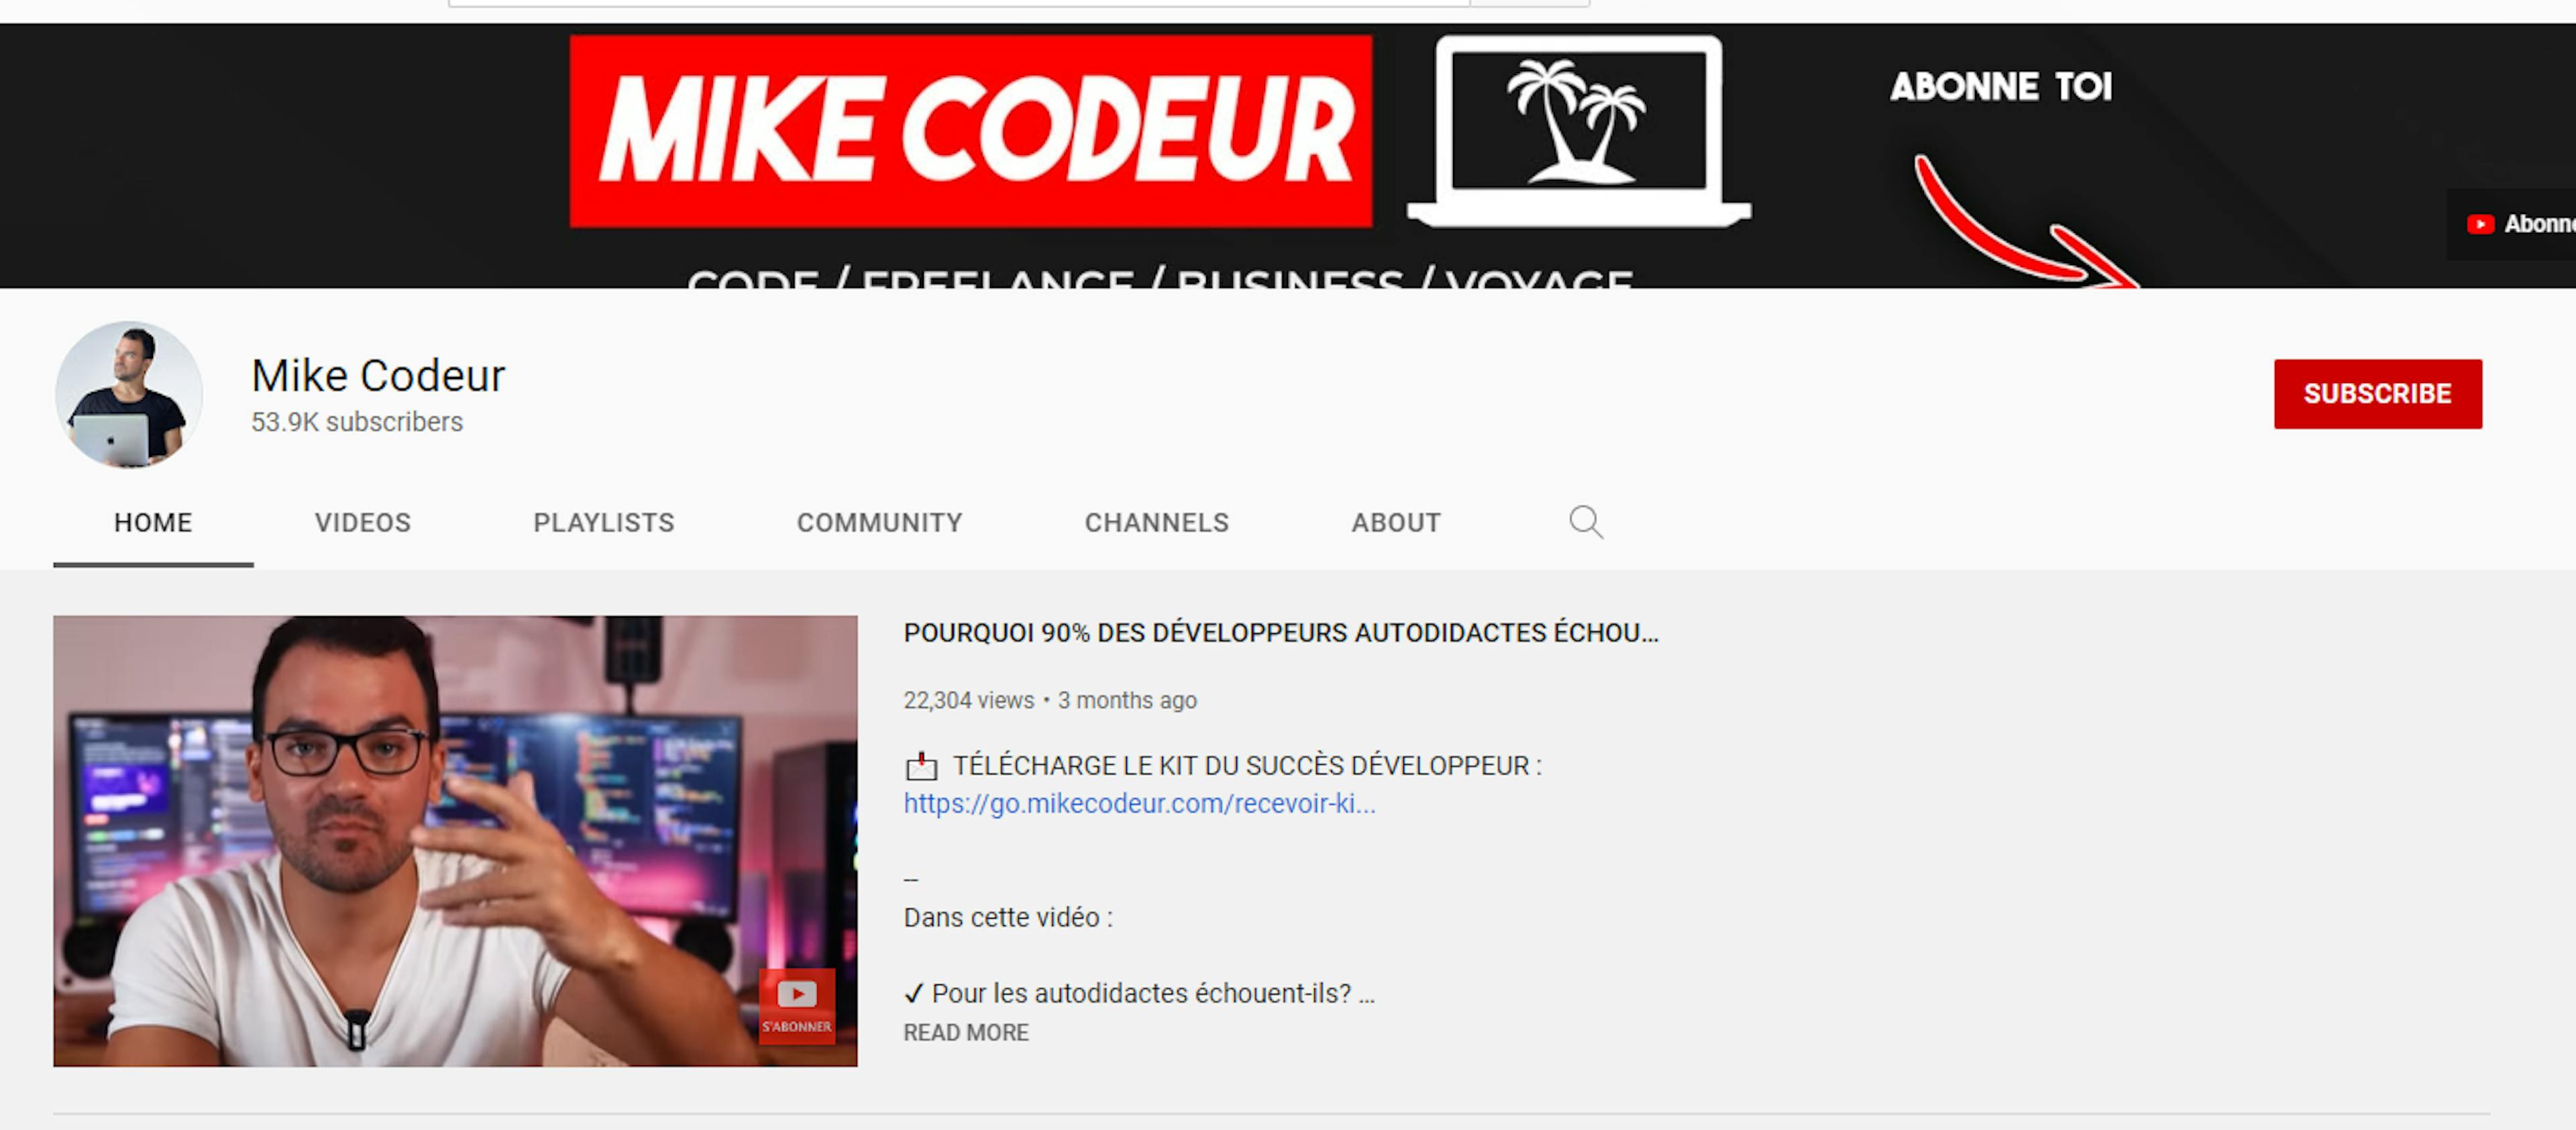 Un aperçu de la chaîne Youtube de Mike Codeur qui propose des guides pour devenir développeur indépendant